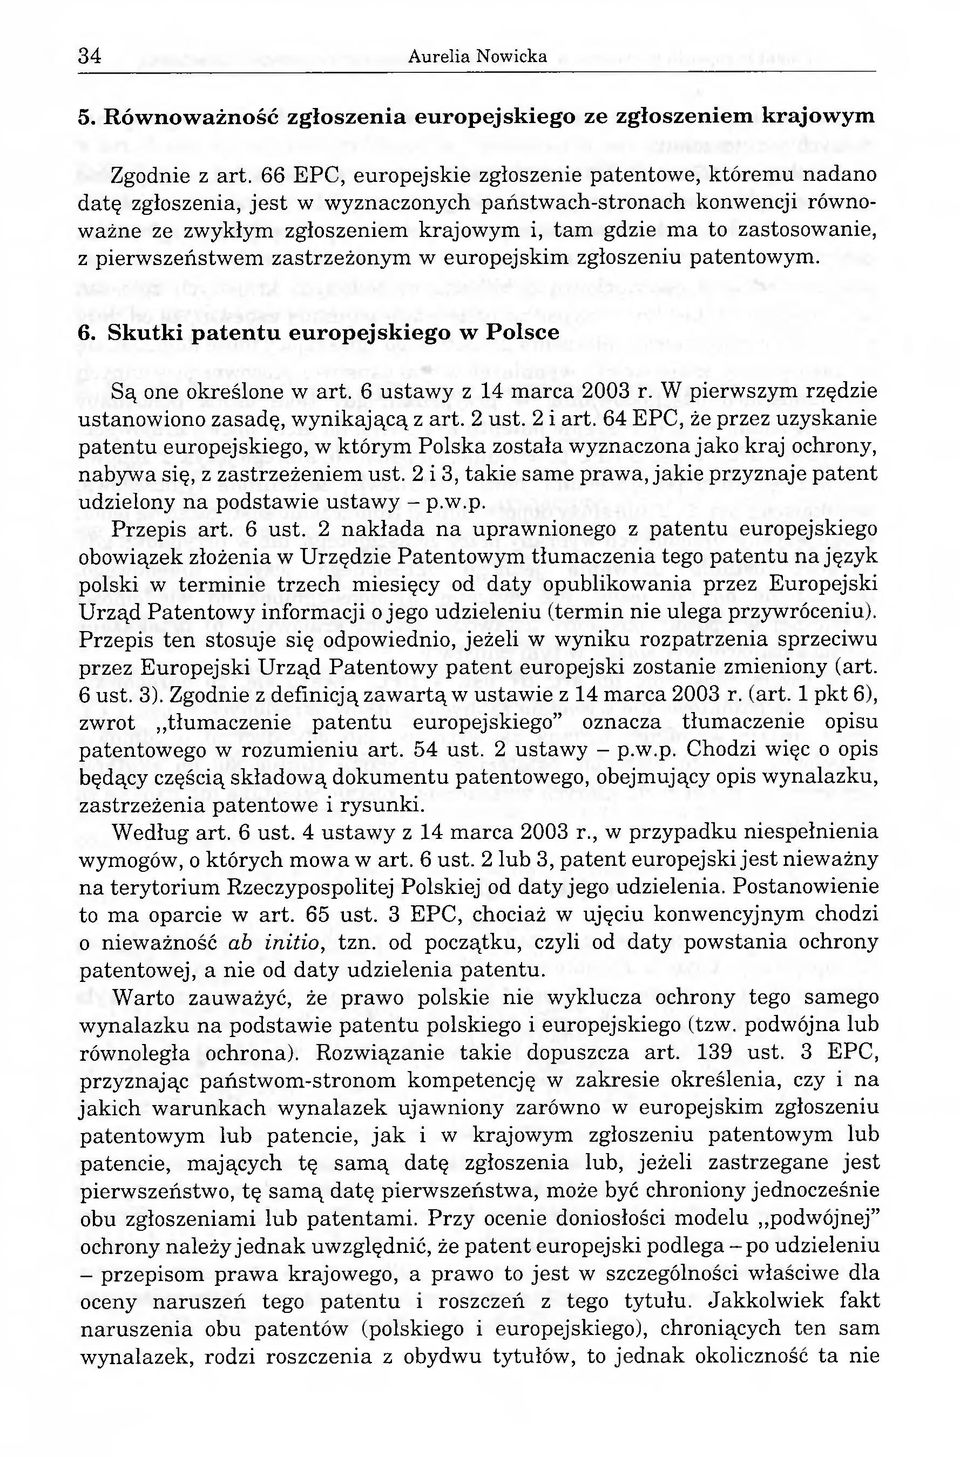 z pierwszeństwem zastrzeżonym w europejskim zgłoszeniu patentowym. 6. Skutki patentu europejskiego w Polsce Są one określone w art. 6 ustawy z 14 marca 2003 r.